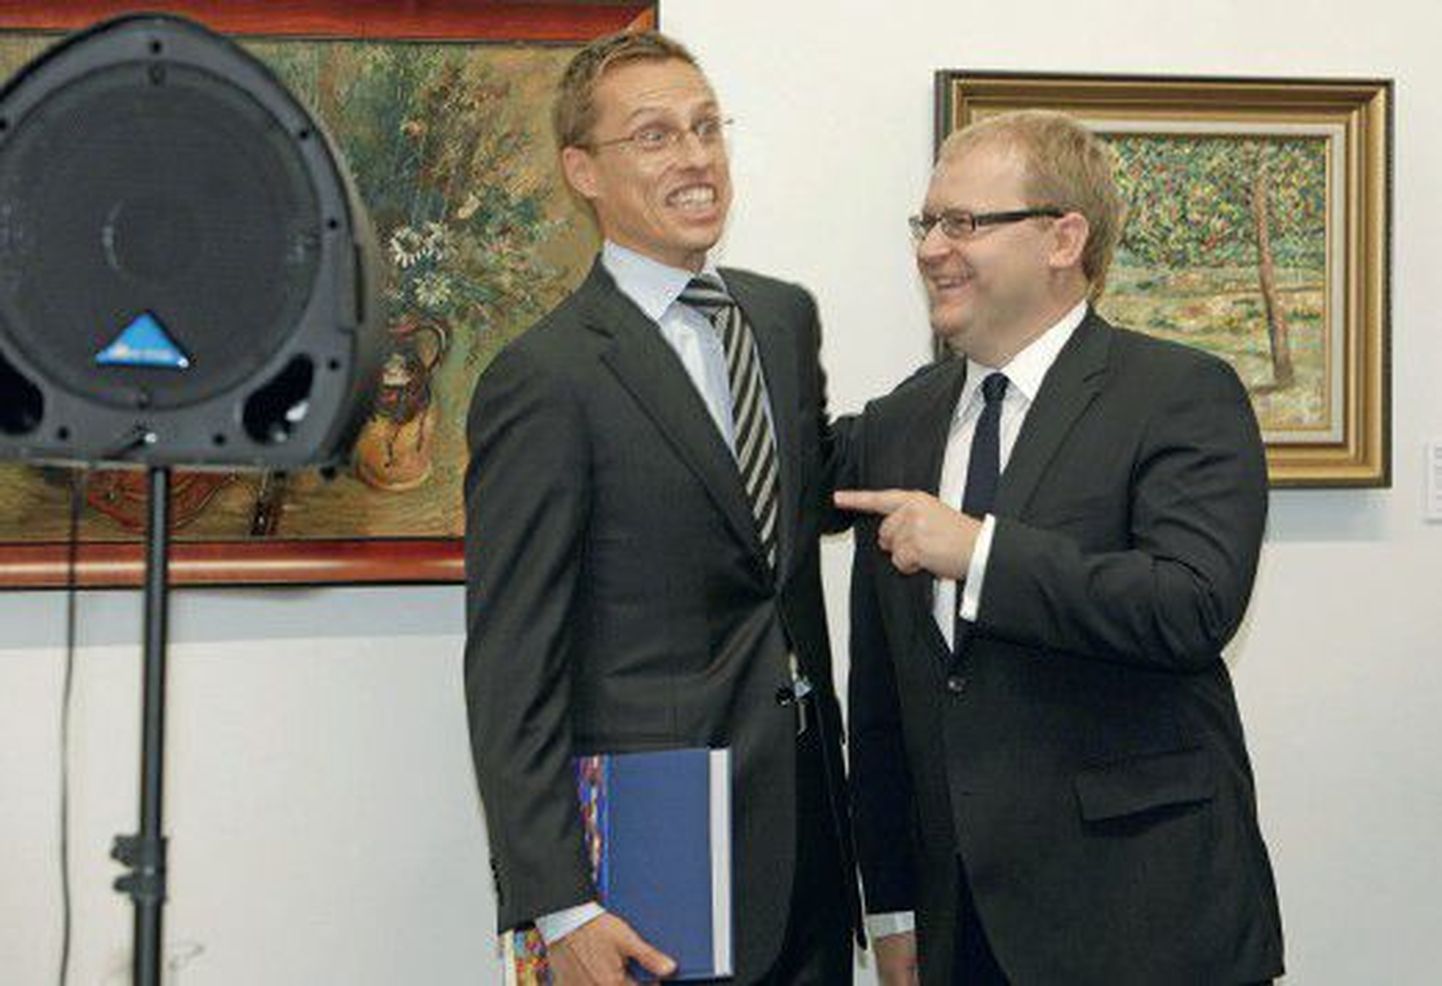 Министр иностранных дел Эстонии Урмас Паэт (справа) и его финский коллега Александр Стубб в прекрасном расположении духа.